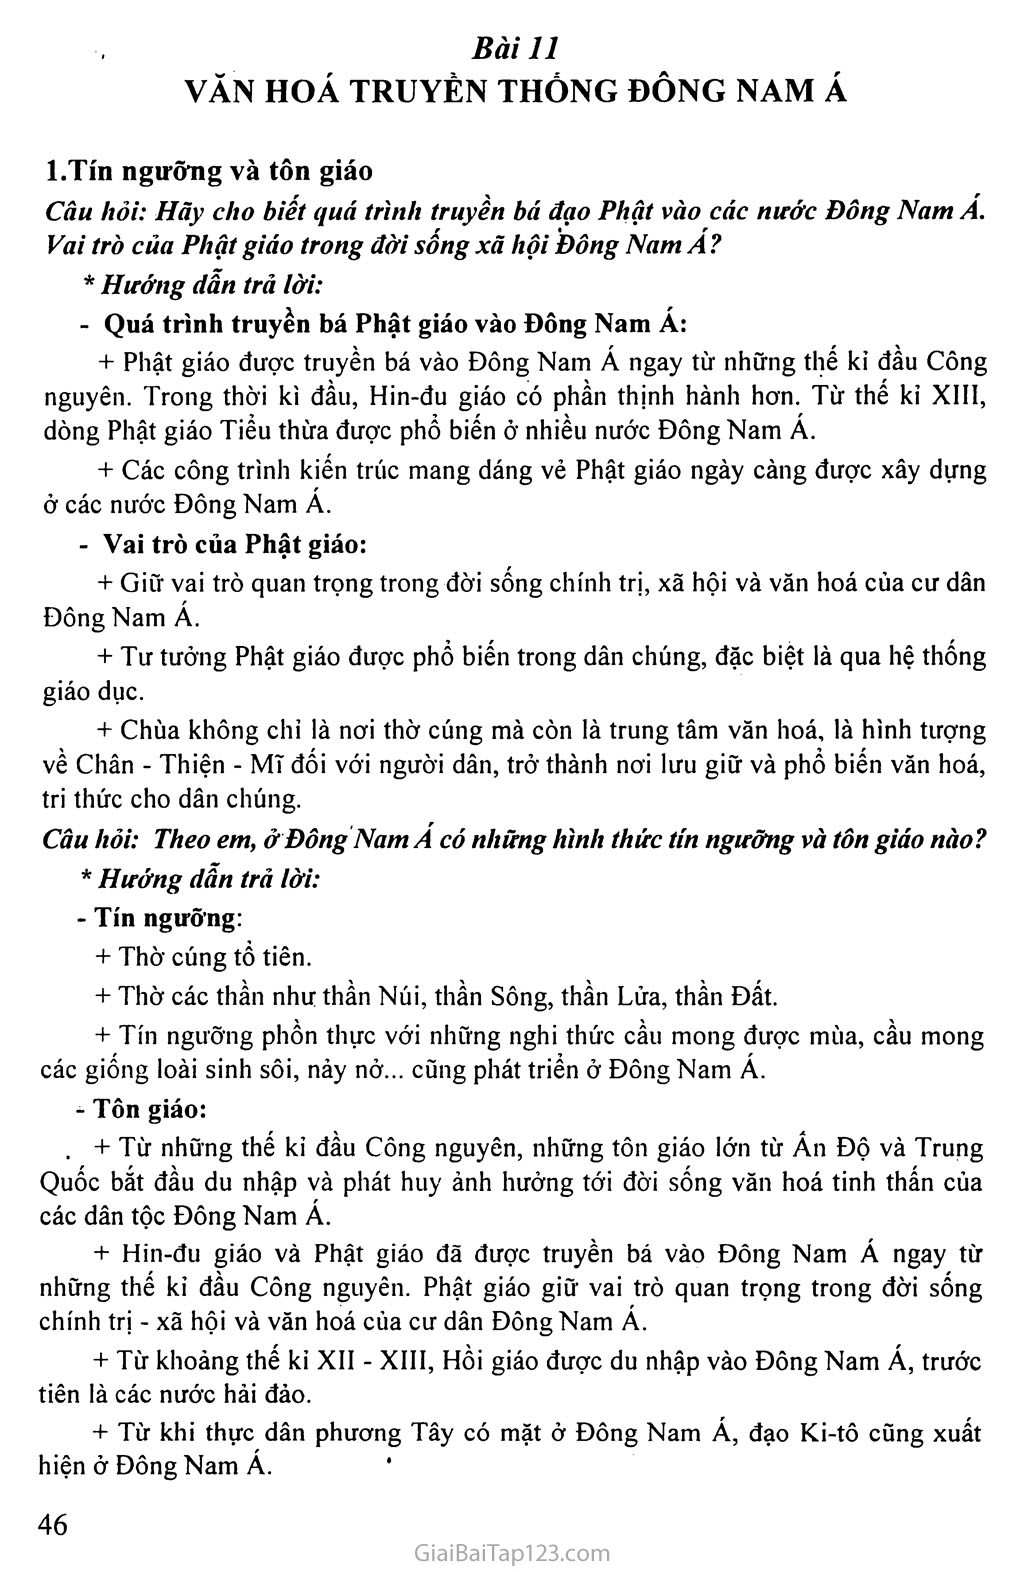 Bài 11: Văn hóa truyền thống Đông Nam Á trang 1